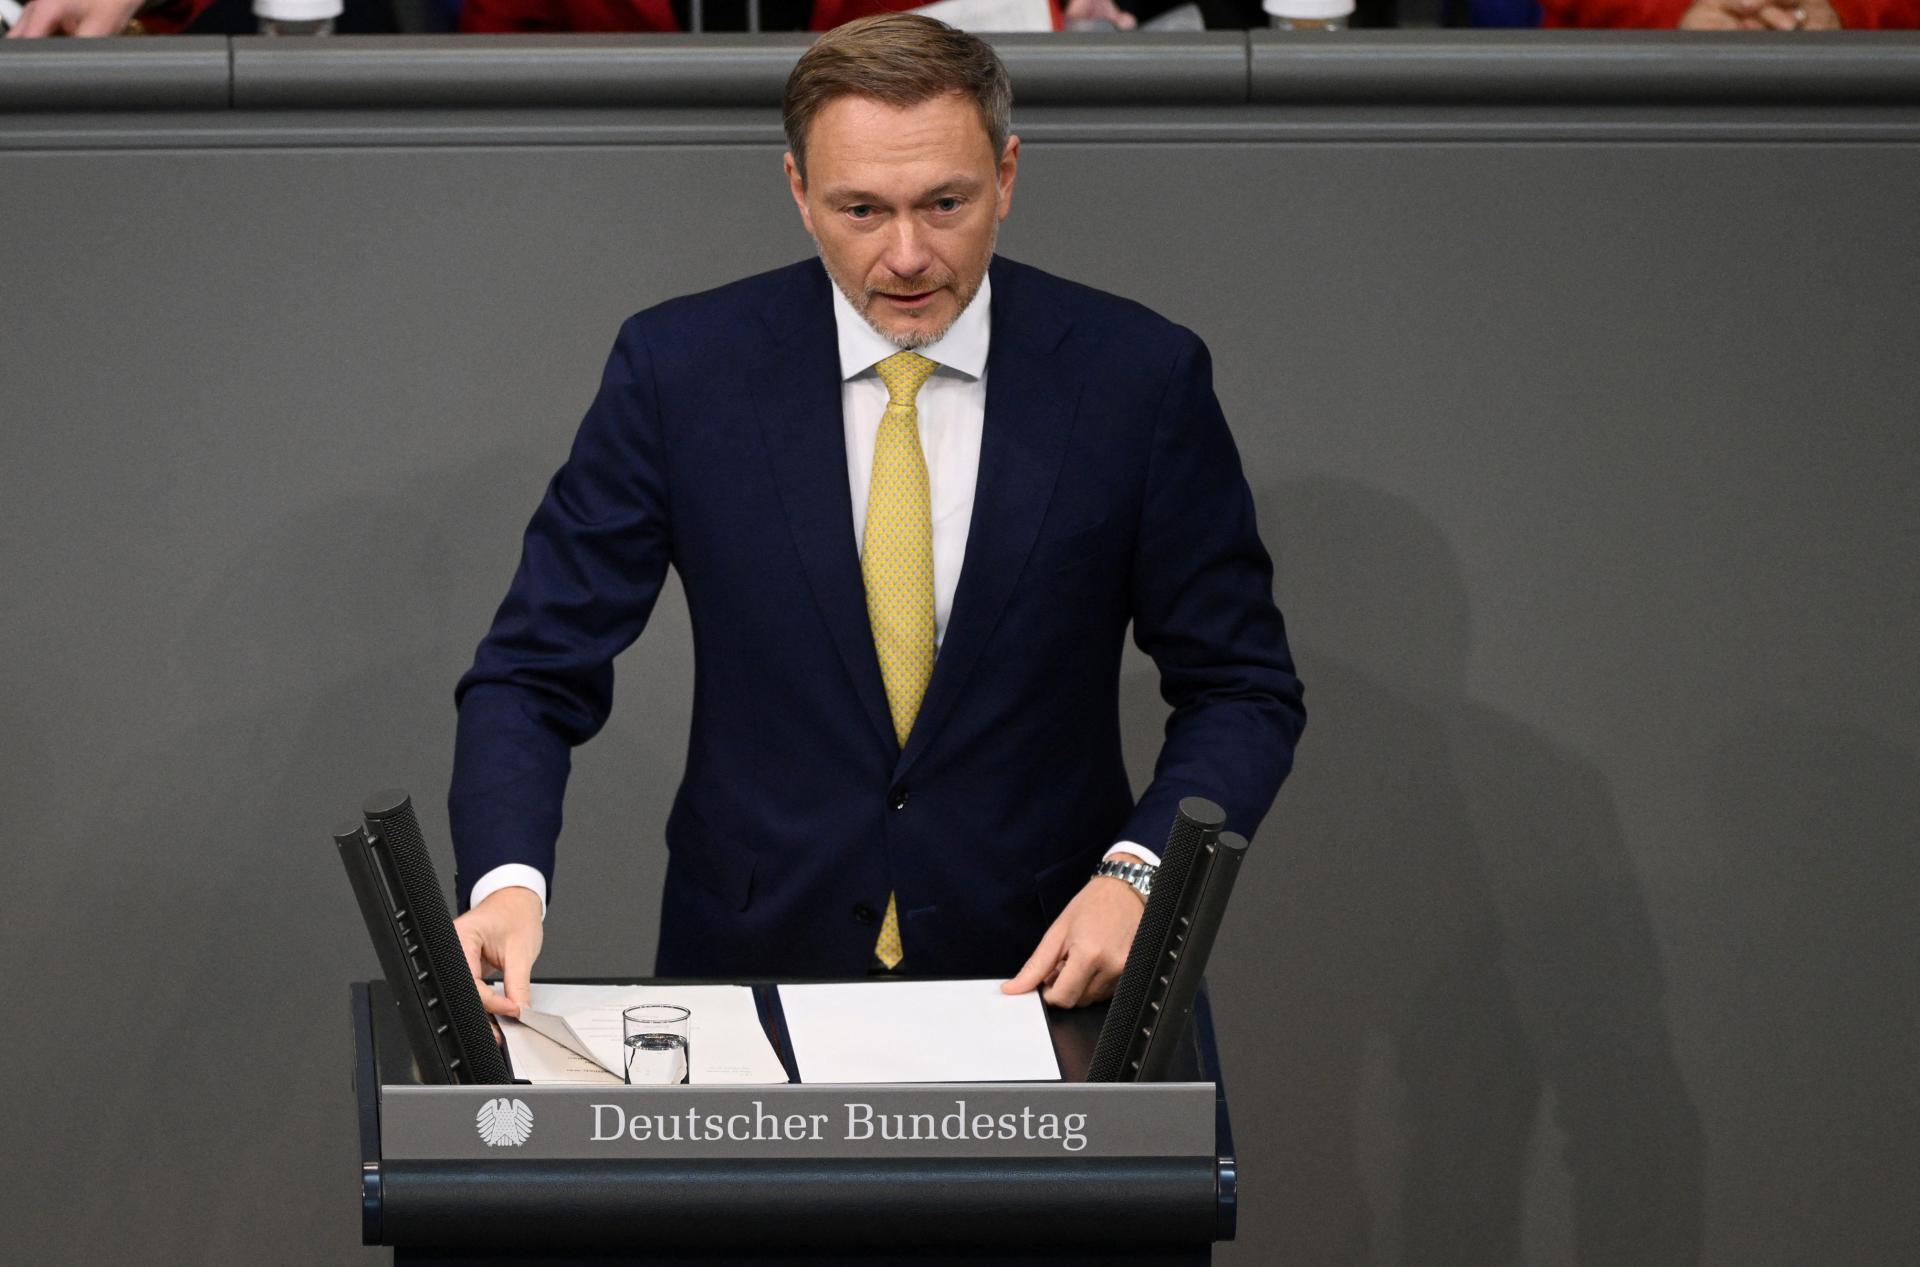 Nemecká vláda chce poskytnúť obyvateľom daňové úľavy za 15 miliárd eur